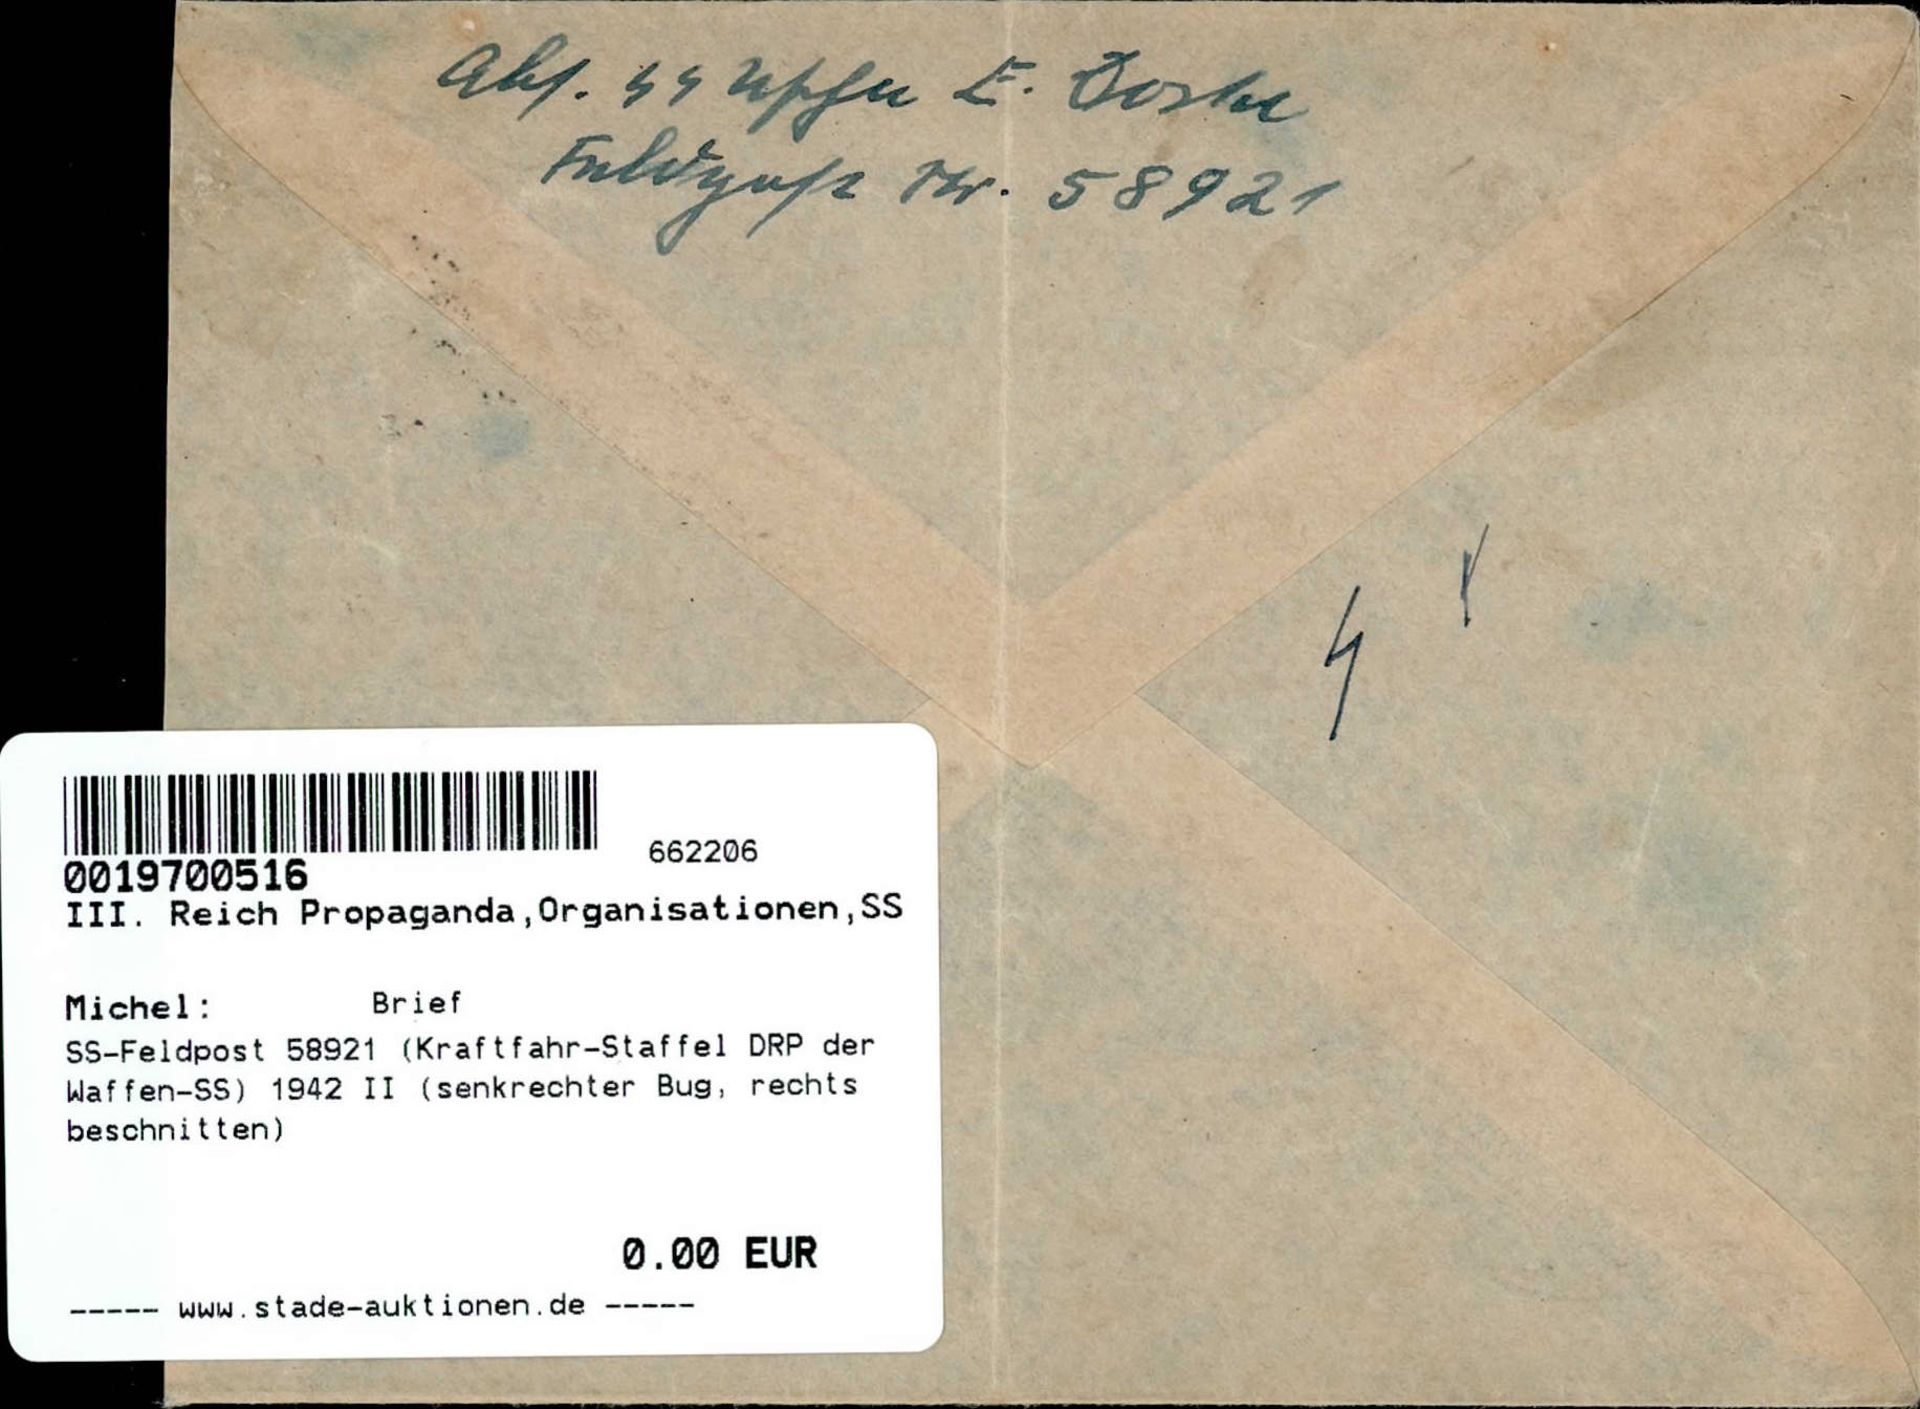 SS-Feldpost 58921 (Kraftfahr-Staffel DRP der Waffen-SS) 1942 II (senkrechter Bug, rechts - Image 2 of 2